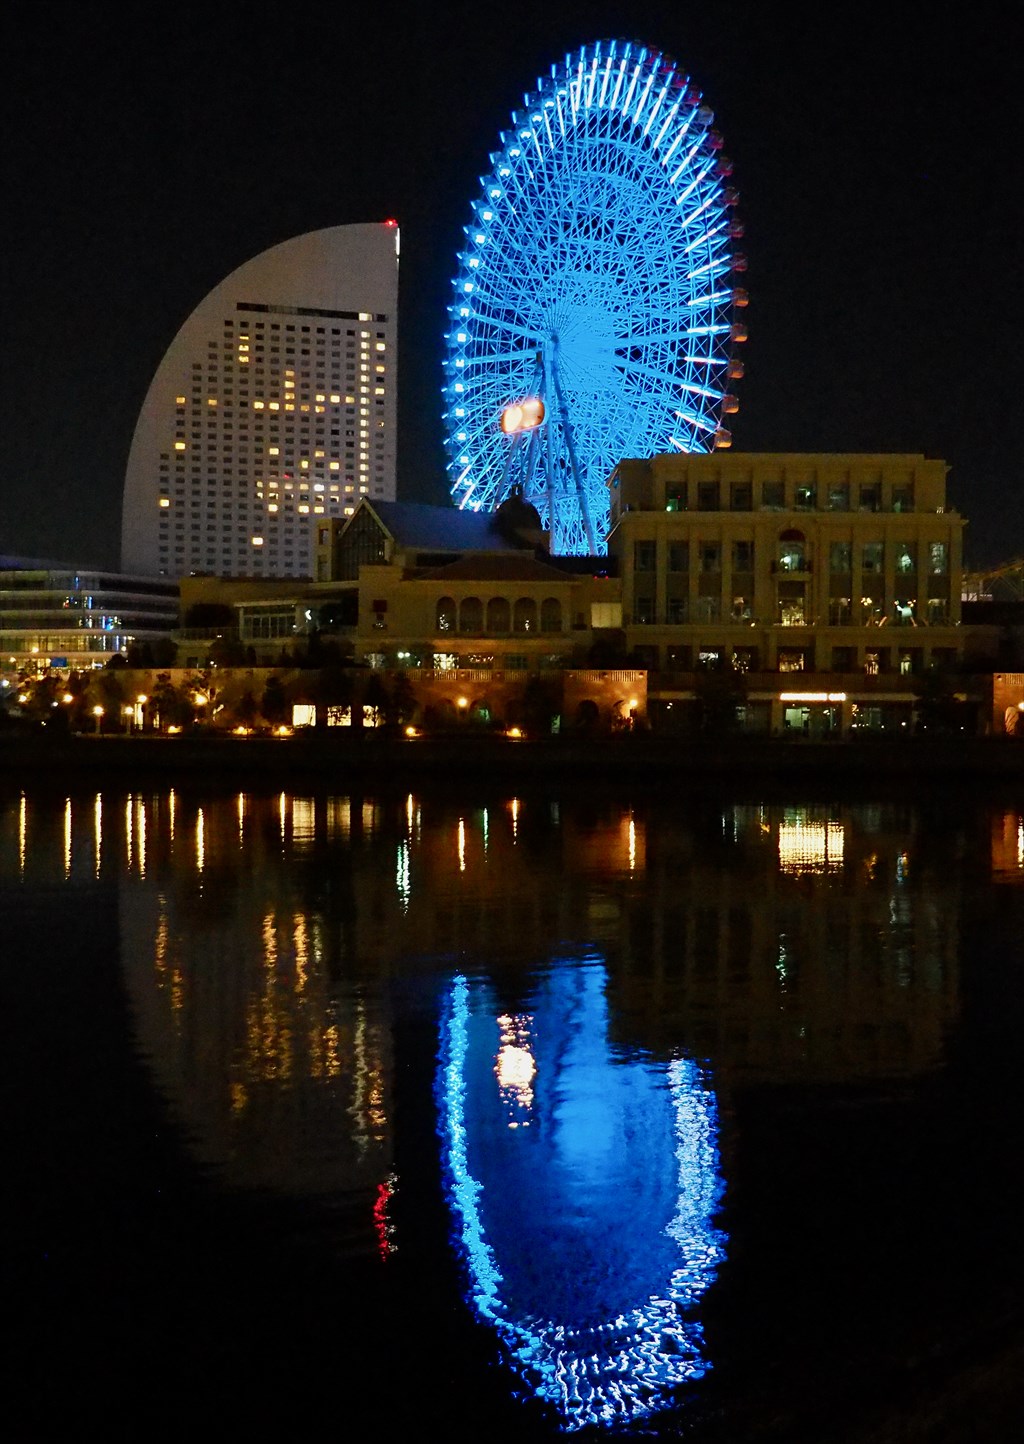 横浜みなとみらいの夜景 無料フリー画像素材ブログ